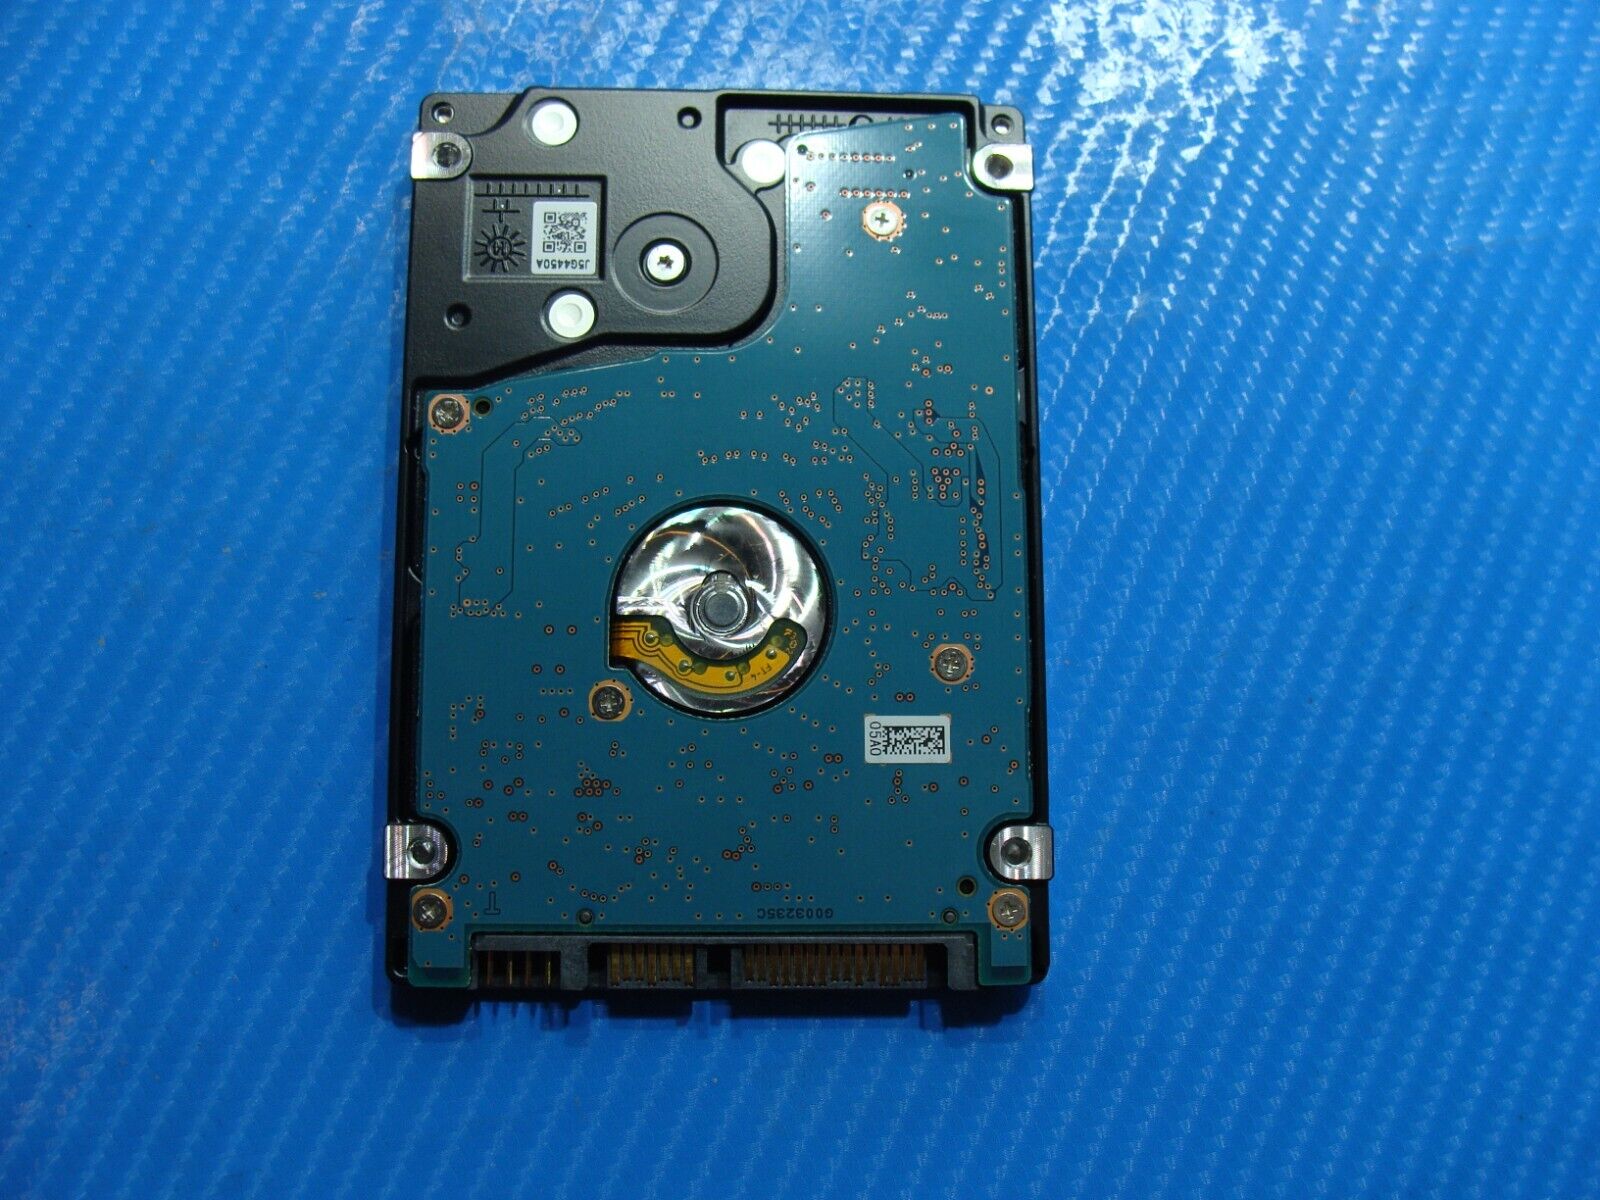 Dell 5552 Toshiba 500GB SATA 2.5